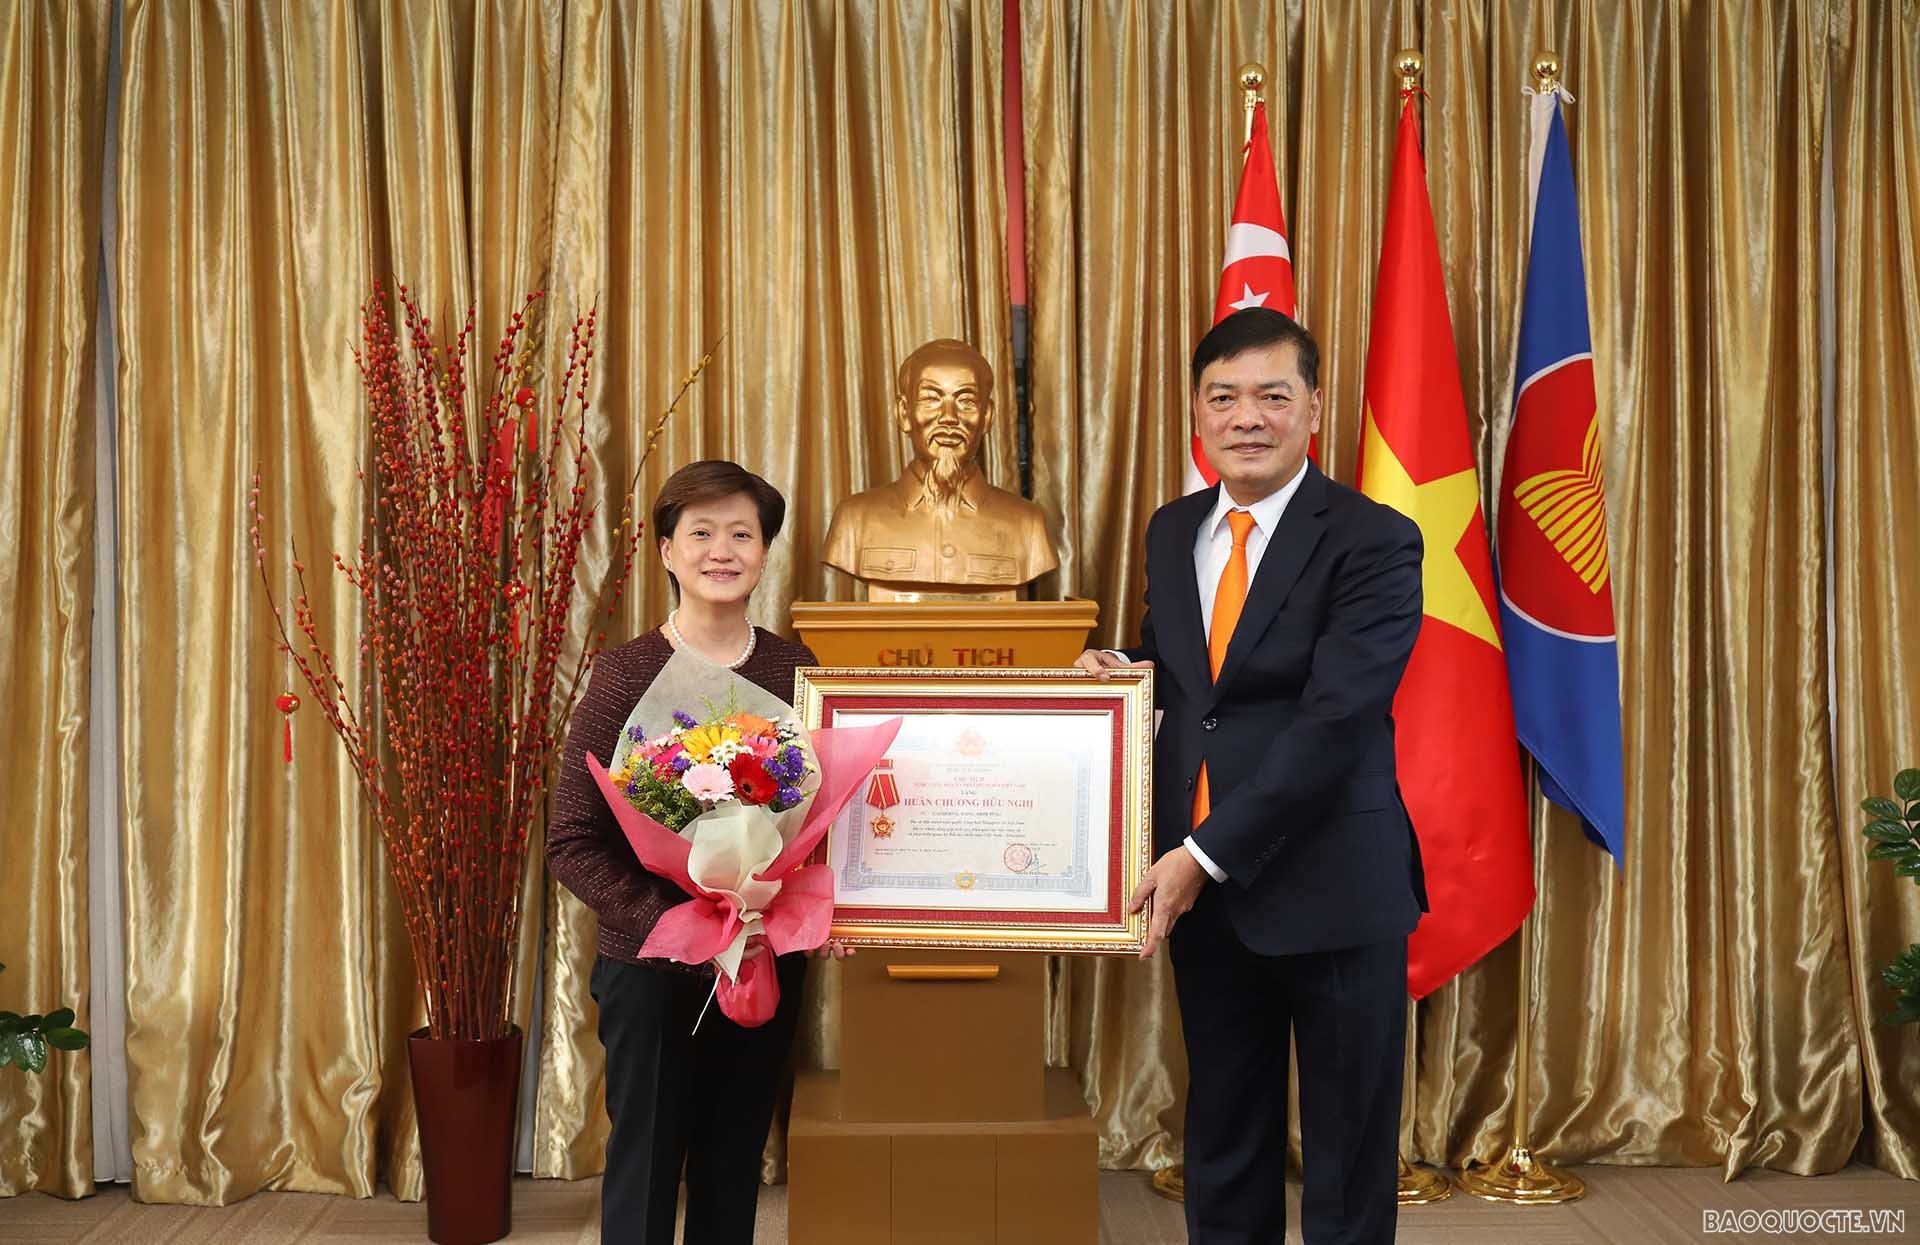 Đại sứ Mai Phước Dũng trao Huân chương Hữu nghị và Kỷ niệm chương 'Vì hòa bình, hữu nghị giữa các dân tộc' cho bà Catherine, cựu Đại sứ Singapore tại Việt Nam.